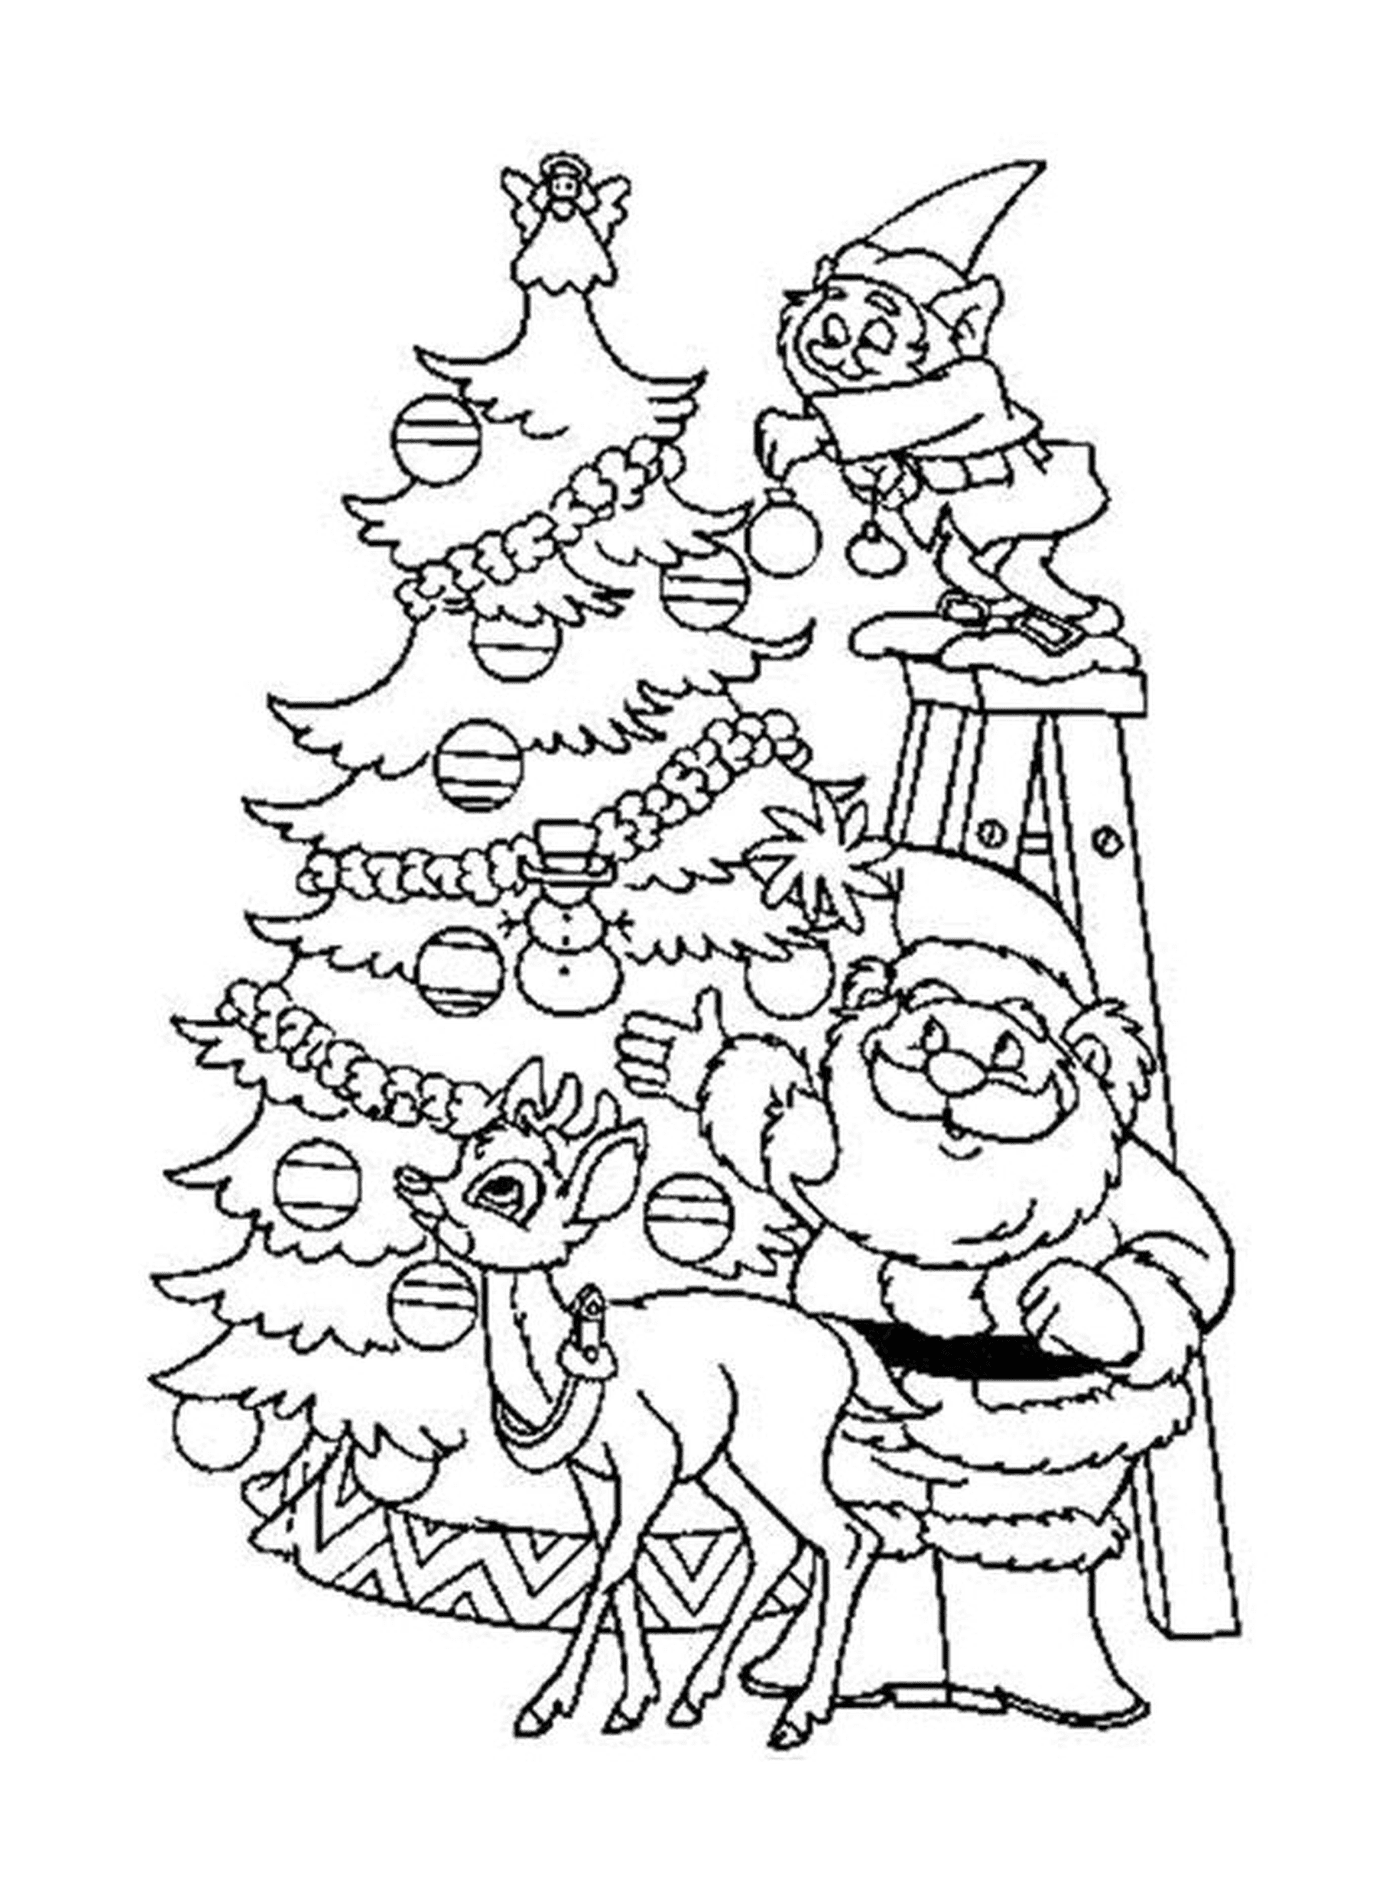  A Christmas tree and Santa Claus 